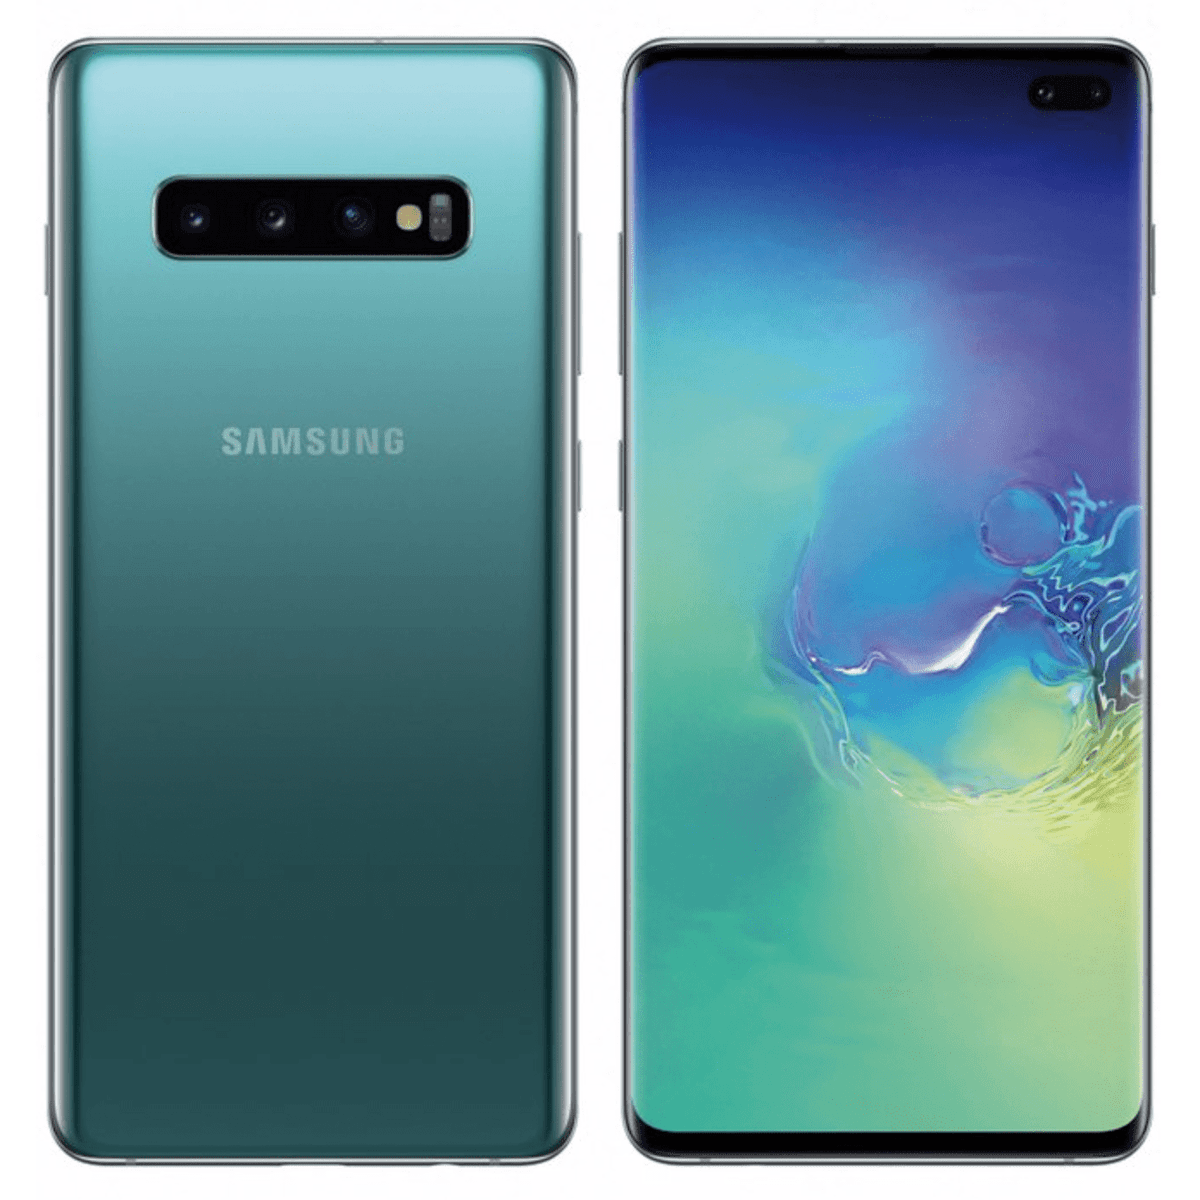 Samsung Galaxy S10 Plus (topowa wersja z podwójnym aparatem z przodu). class="wp-image-884557" title="Samsung Galaxy S10 Plus (topowa wersja z podwójnym aparatem z przodu)." 